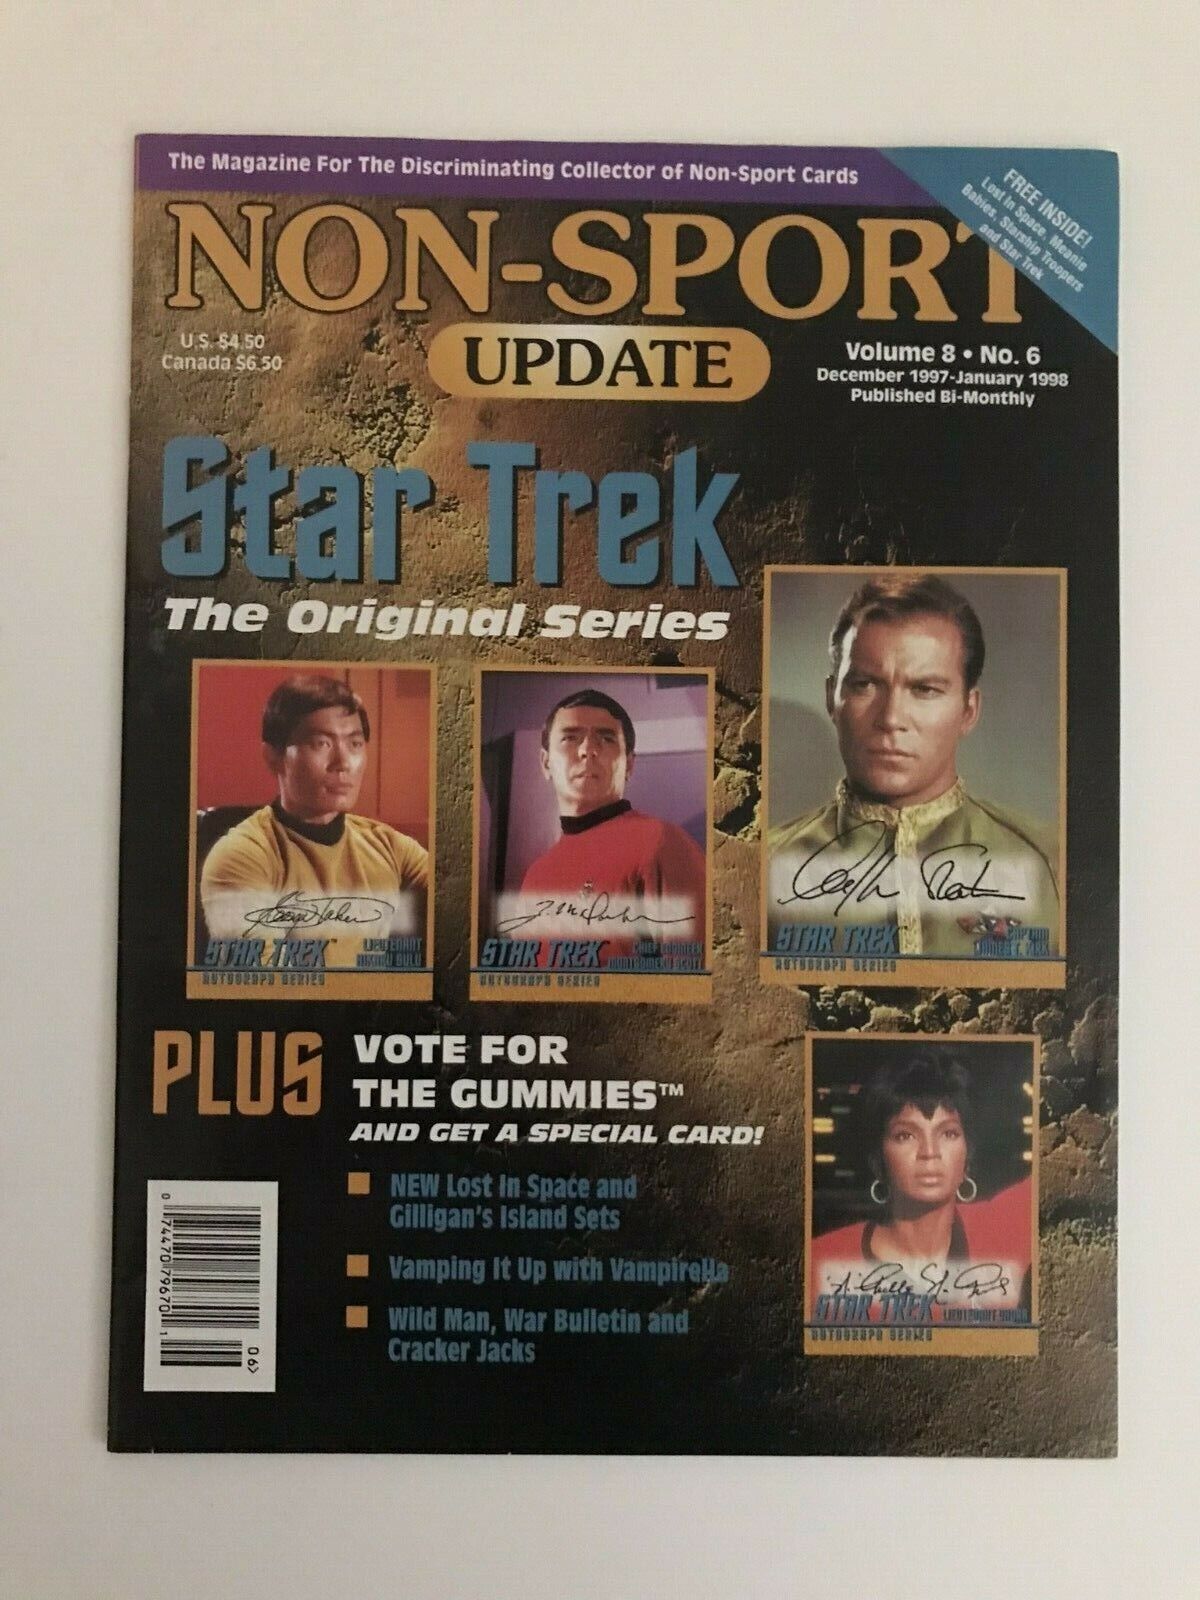 Non-sport Update: Non-sport Card Collector Magazine (vol. 8, #6; Dec/jan '97/98)